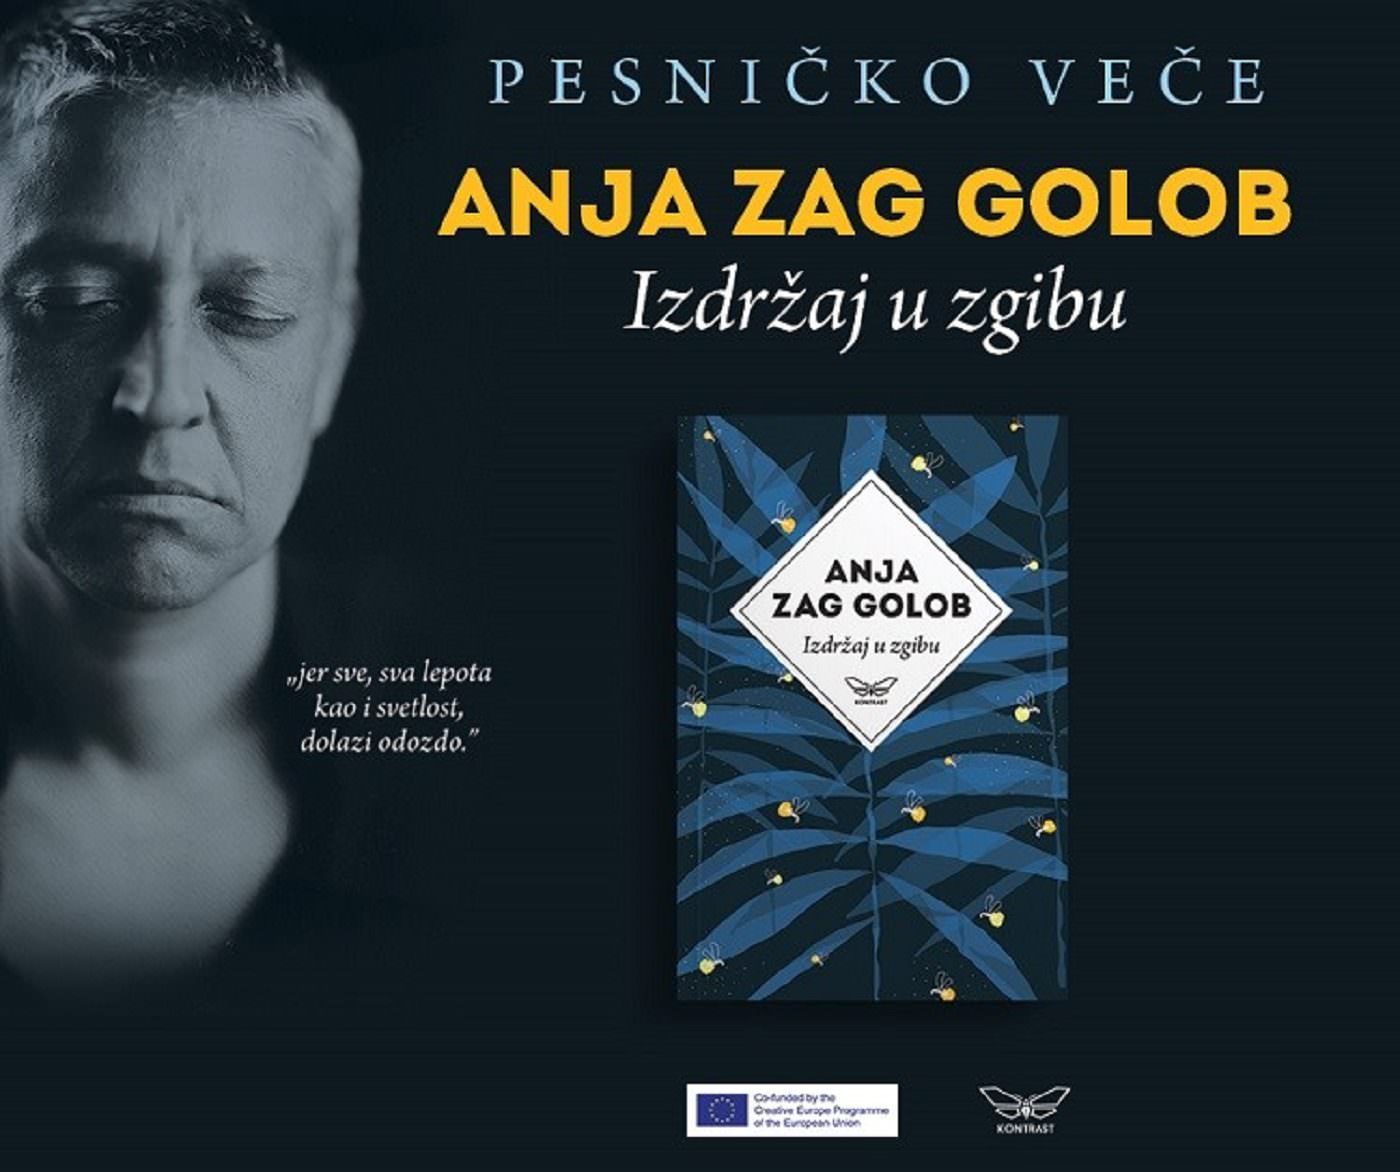 Pesničko veče Anja Zag Golob